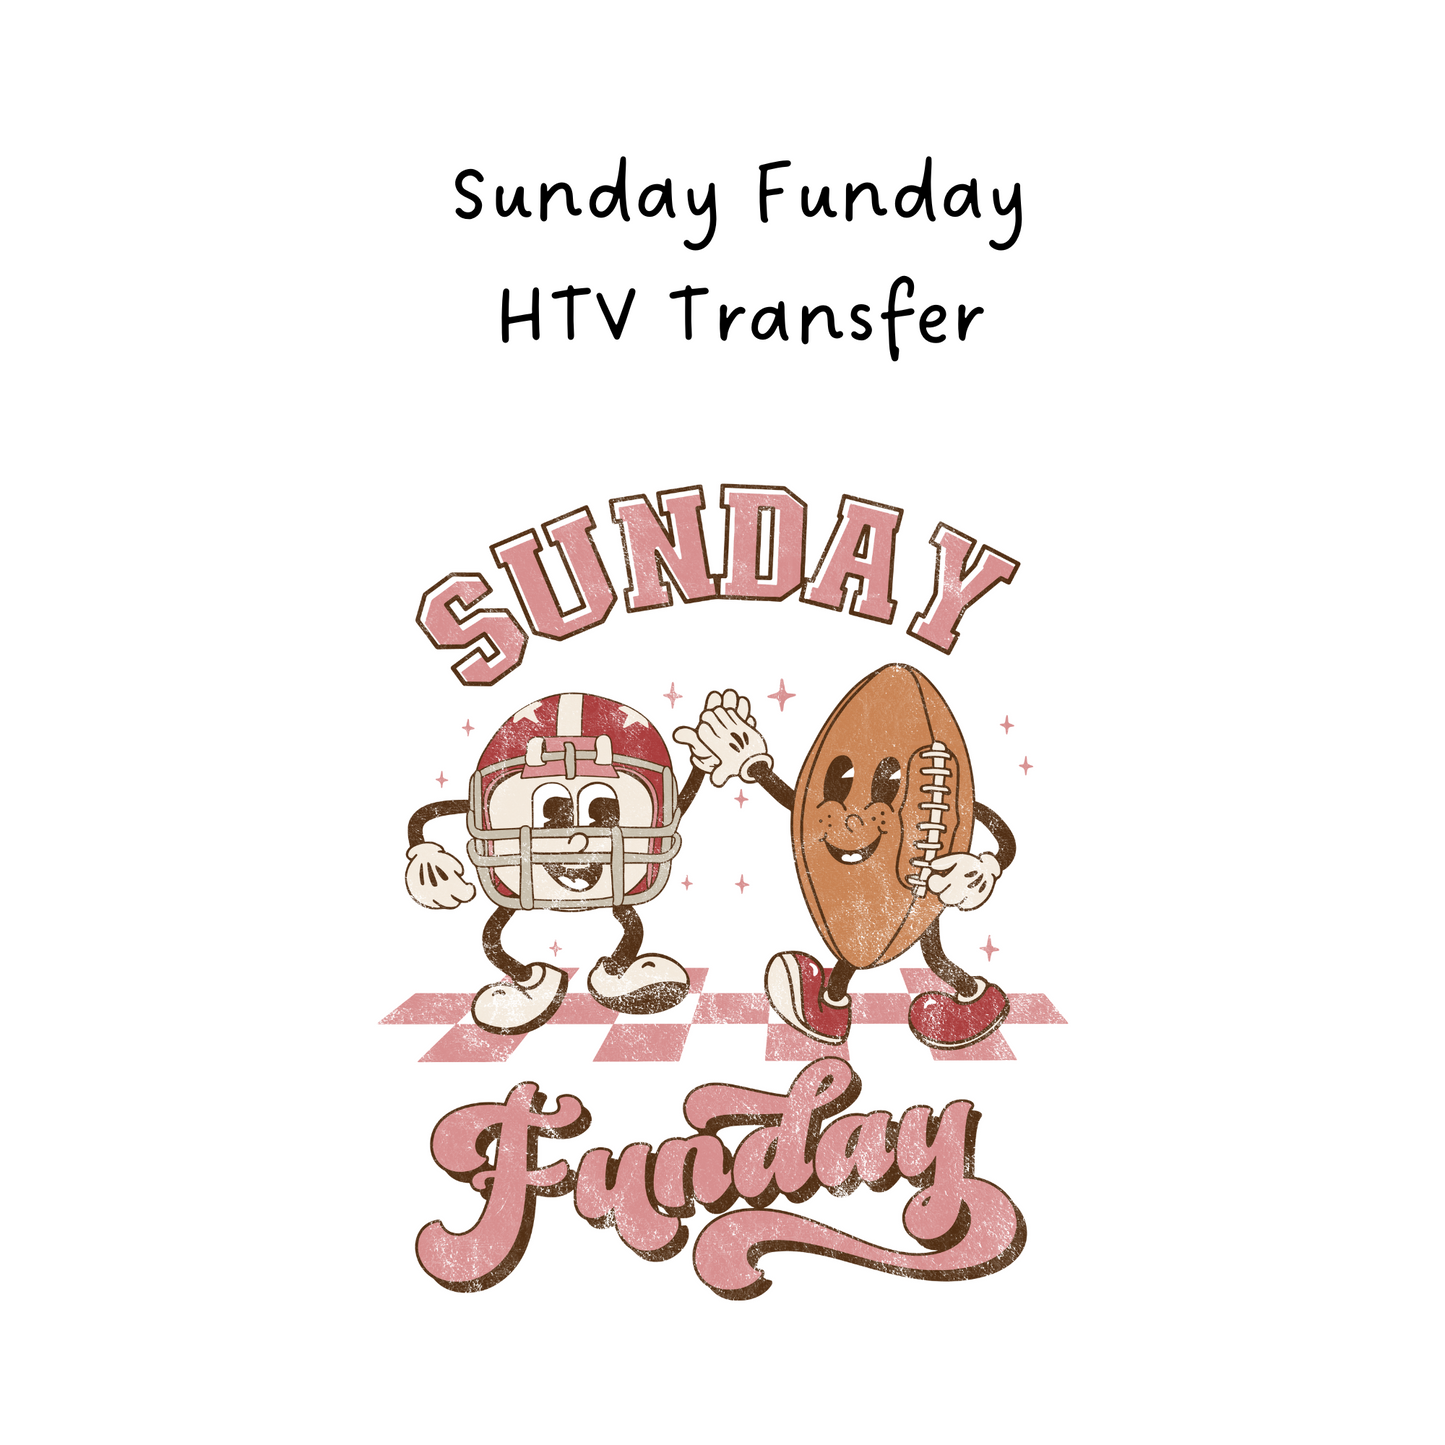 Sunday Funday HTV Transfer